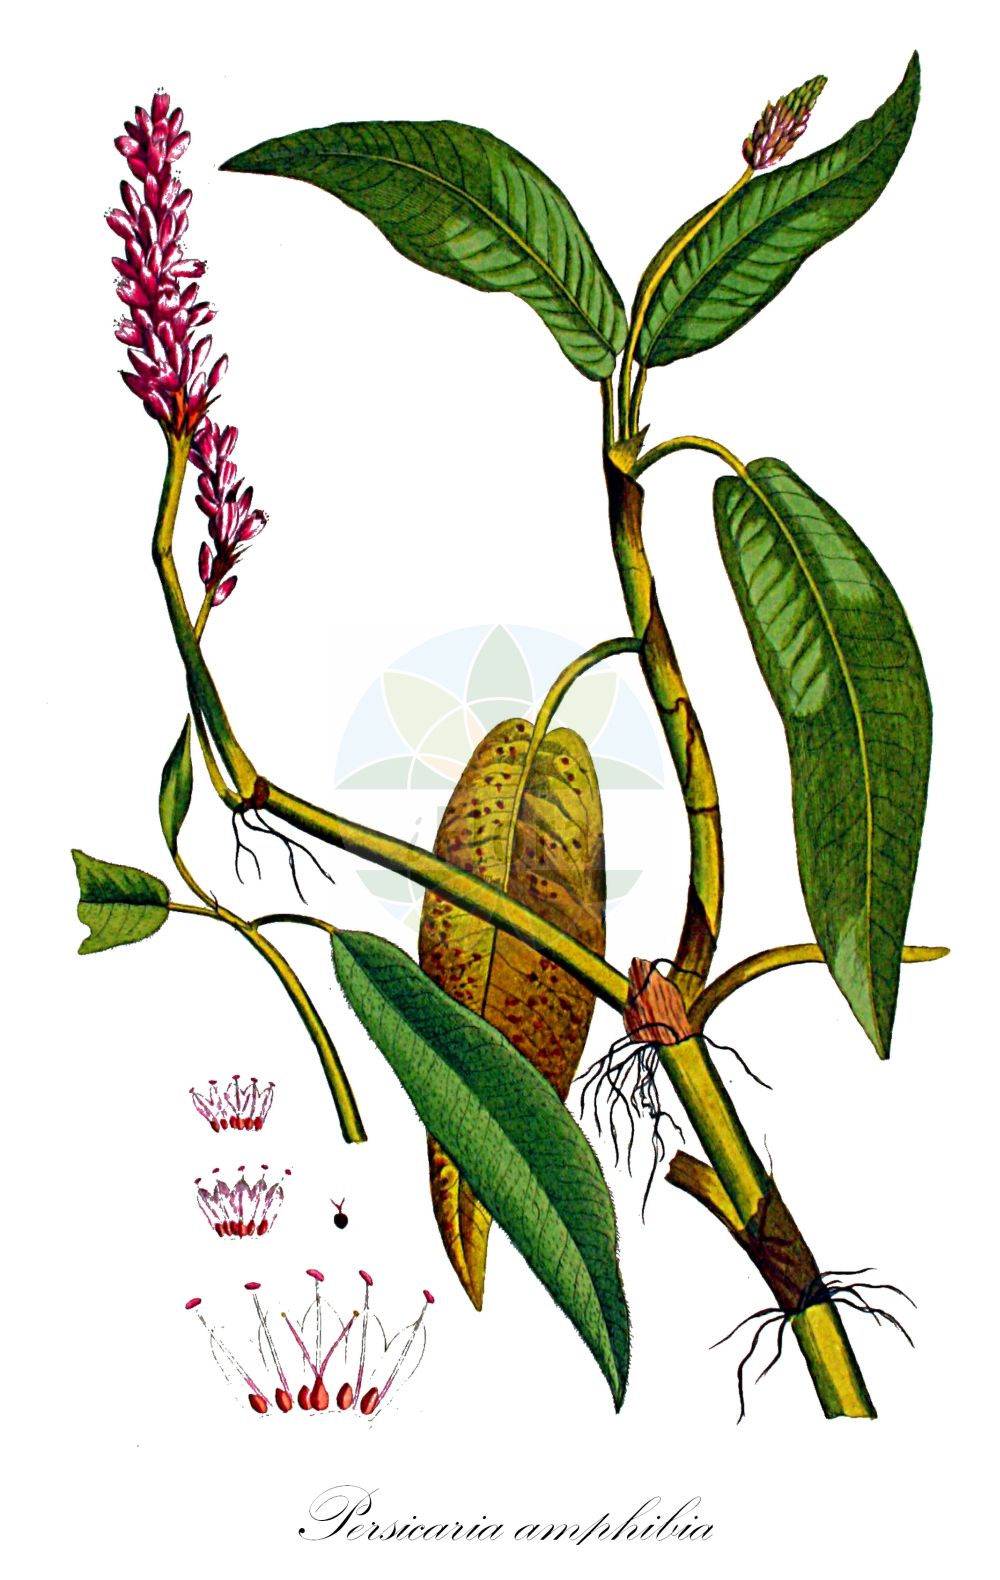 Historische Abbildung von Persicaria amphibia (Wasser-Knöterich - Amphibious Bistort). Das Bild zeigt Blatt, Bluete, Frucht und Same. ---- Historical Drawing of Persicaria amphibia (Wasser-Knöterich - Amphibious Bistort). The image is showing leaf, flower, fruit and seed.(Persicaria amphibia,Wasser-Knöterich,Amphibious Bistort,Persicaria amphibia,Polygonum amphibium,Polygonum amphibium var. terrestre,Wasser-Knoeterich,Amphibious Bistort,Water Knotweed,Devil's Shoestring,Perennial Knotgrass,Shoestringweed,Swamp Smartweed,Water Smartweed,Willow Grass,Persicaria,Knöterich,Knotgrass,Polygonaceae,Knöterichgewächse,Knotgrass family,Blatt,Bluete,Frucht,Same,leaf,flower,fruit,seed,Kops (1800-1934))